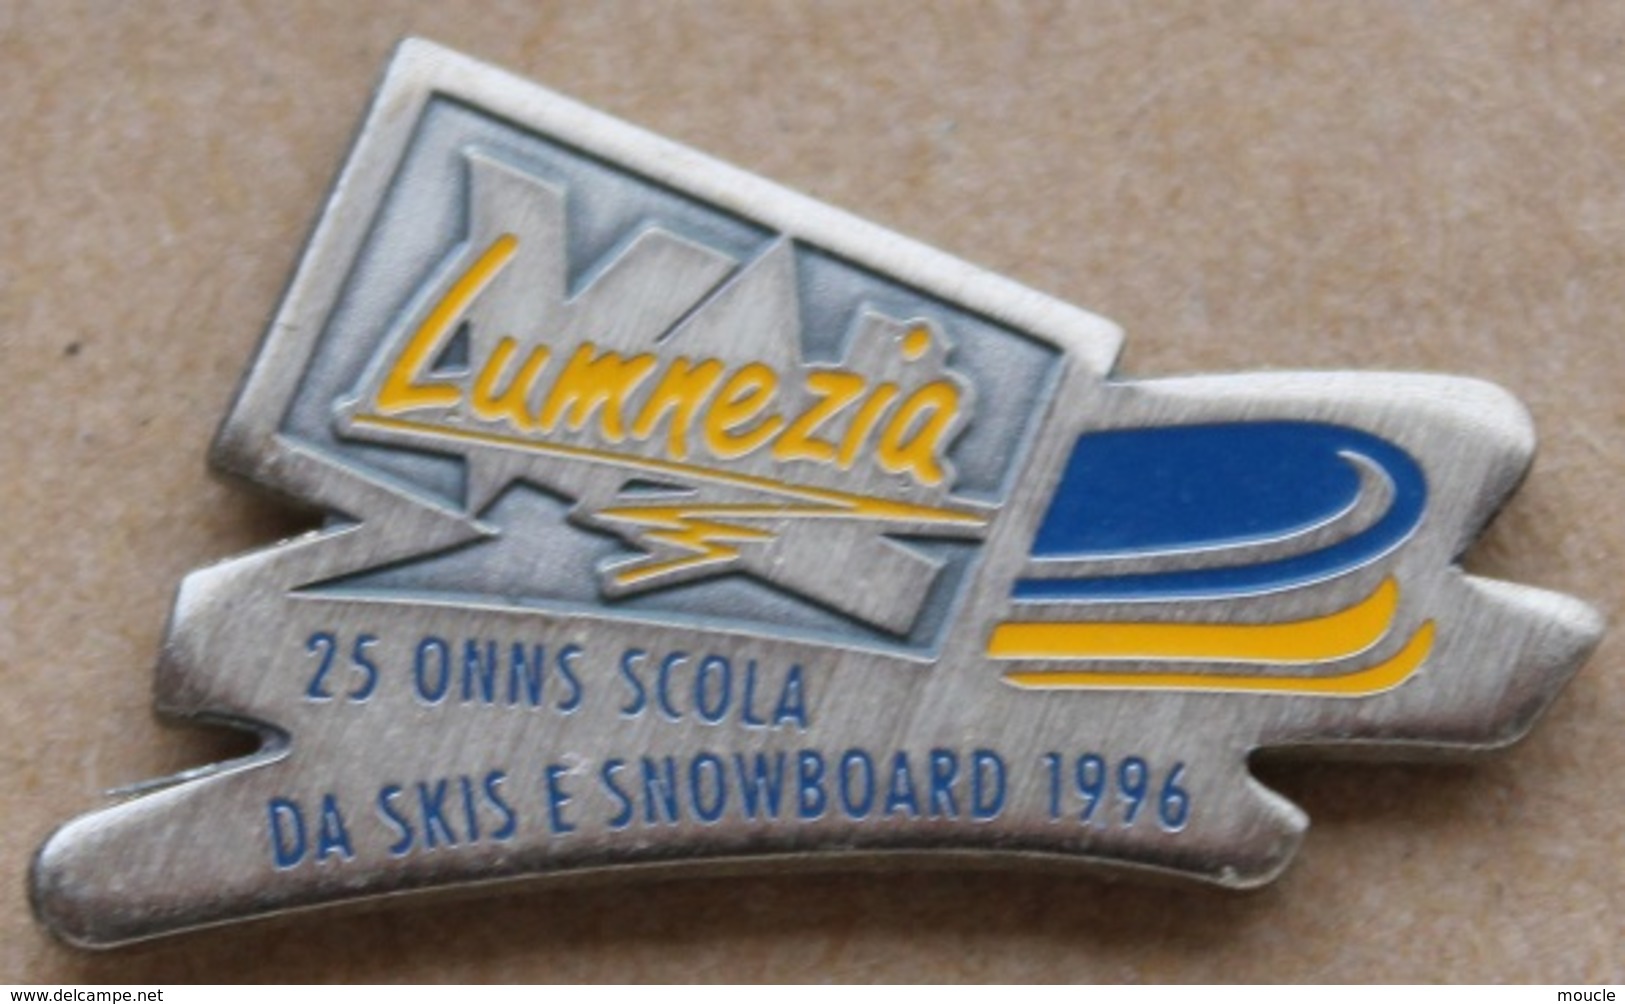 LUMNEZIA - 25 ONNS SCOLA DA SKIS E SNOWBOARD 1996 - LANGUE SUISSE ROMANCHE - GRISON - 25 ANS ECOLE DE SKI ET  -    (14) - Sports D'hiver